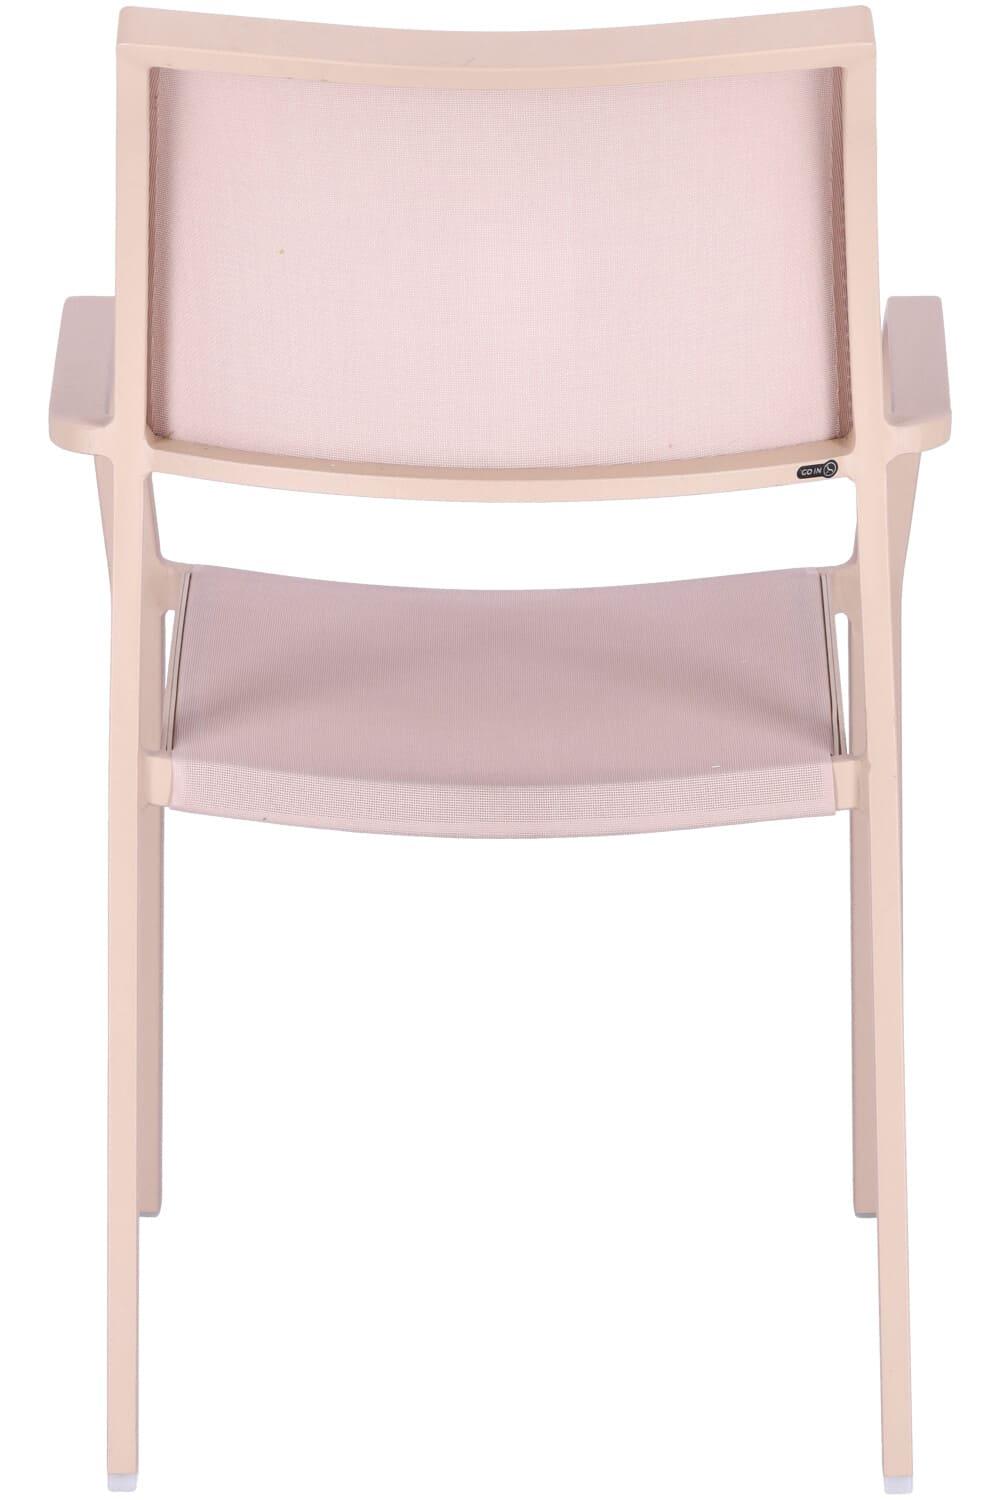 Abbildung arm chair Alexis Rückansicht